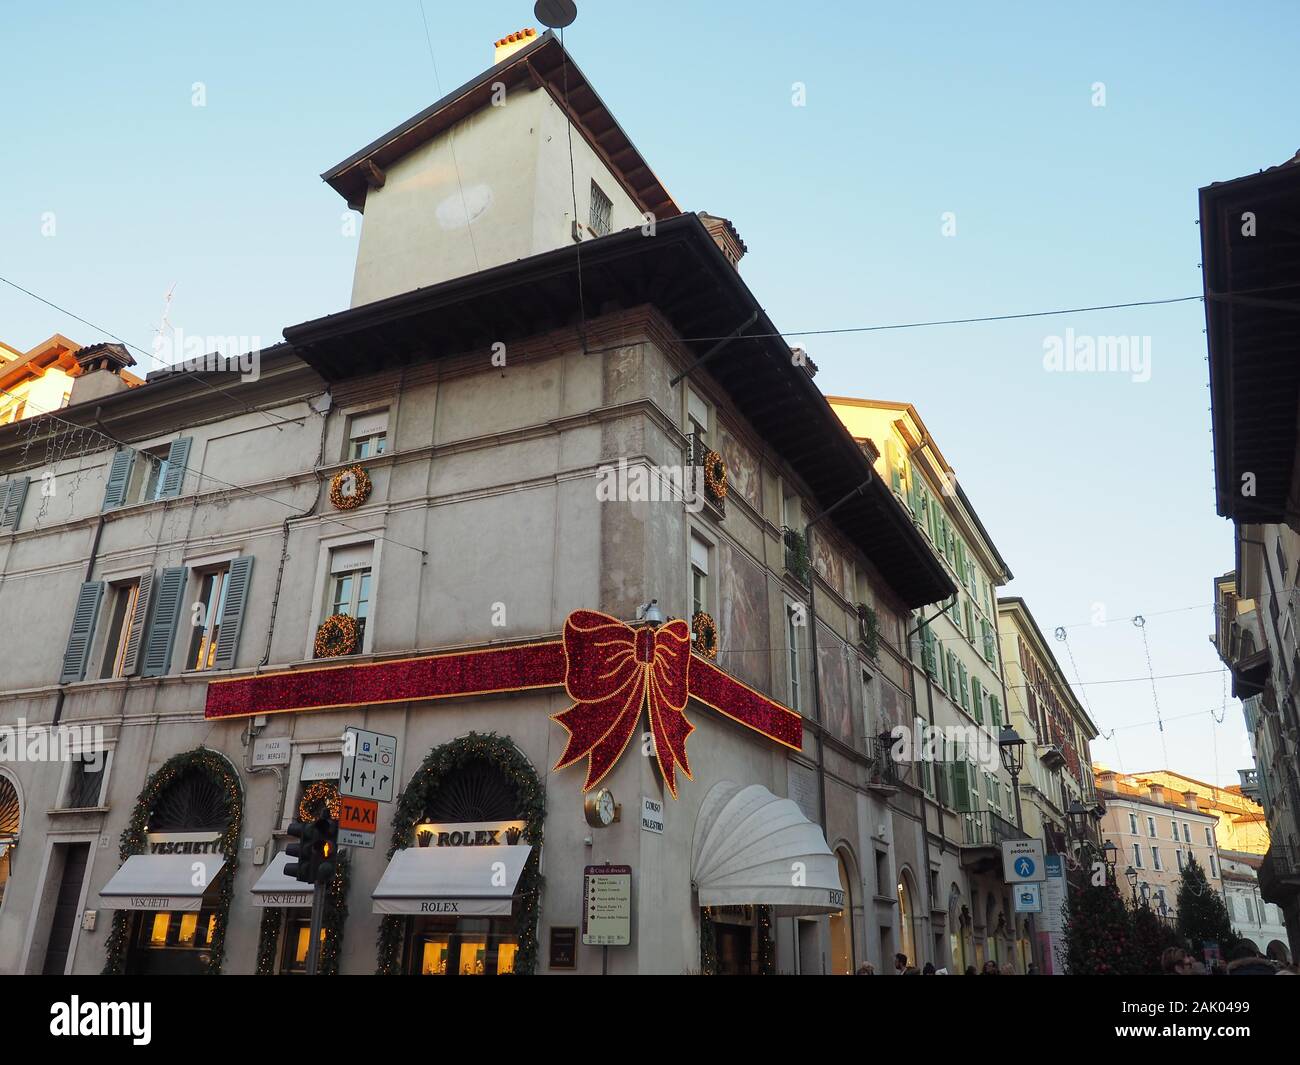 Décoration de Noël Rolex avec noeud rouge - Brescia - Italie Banque D'Images